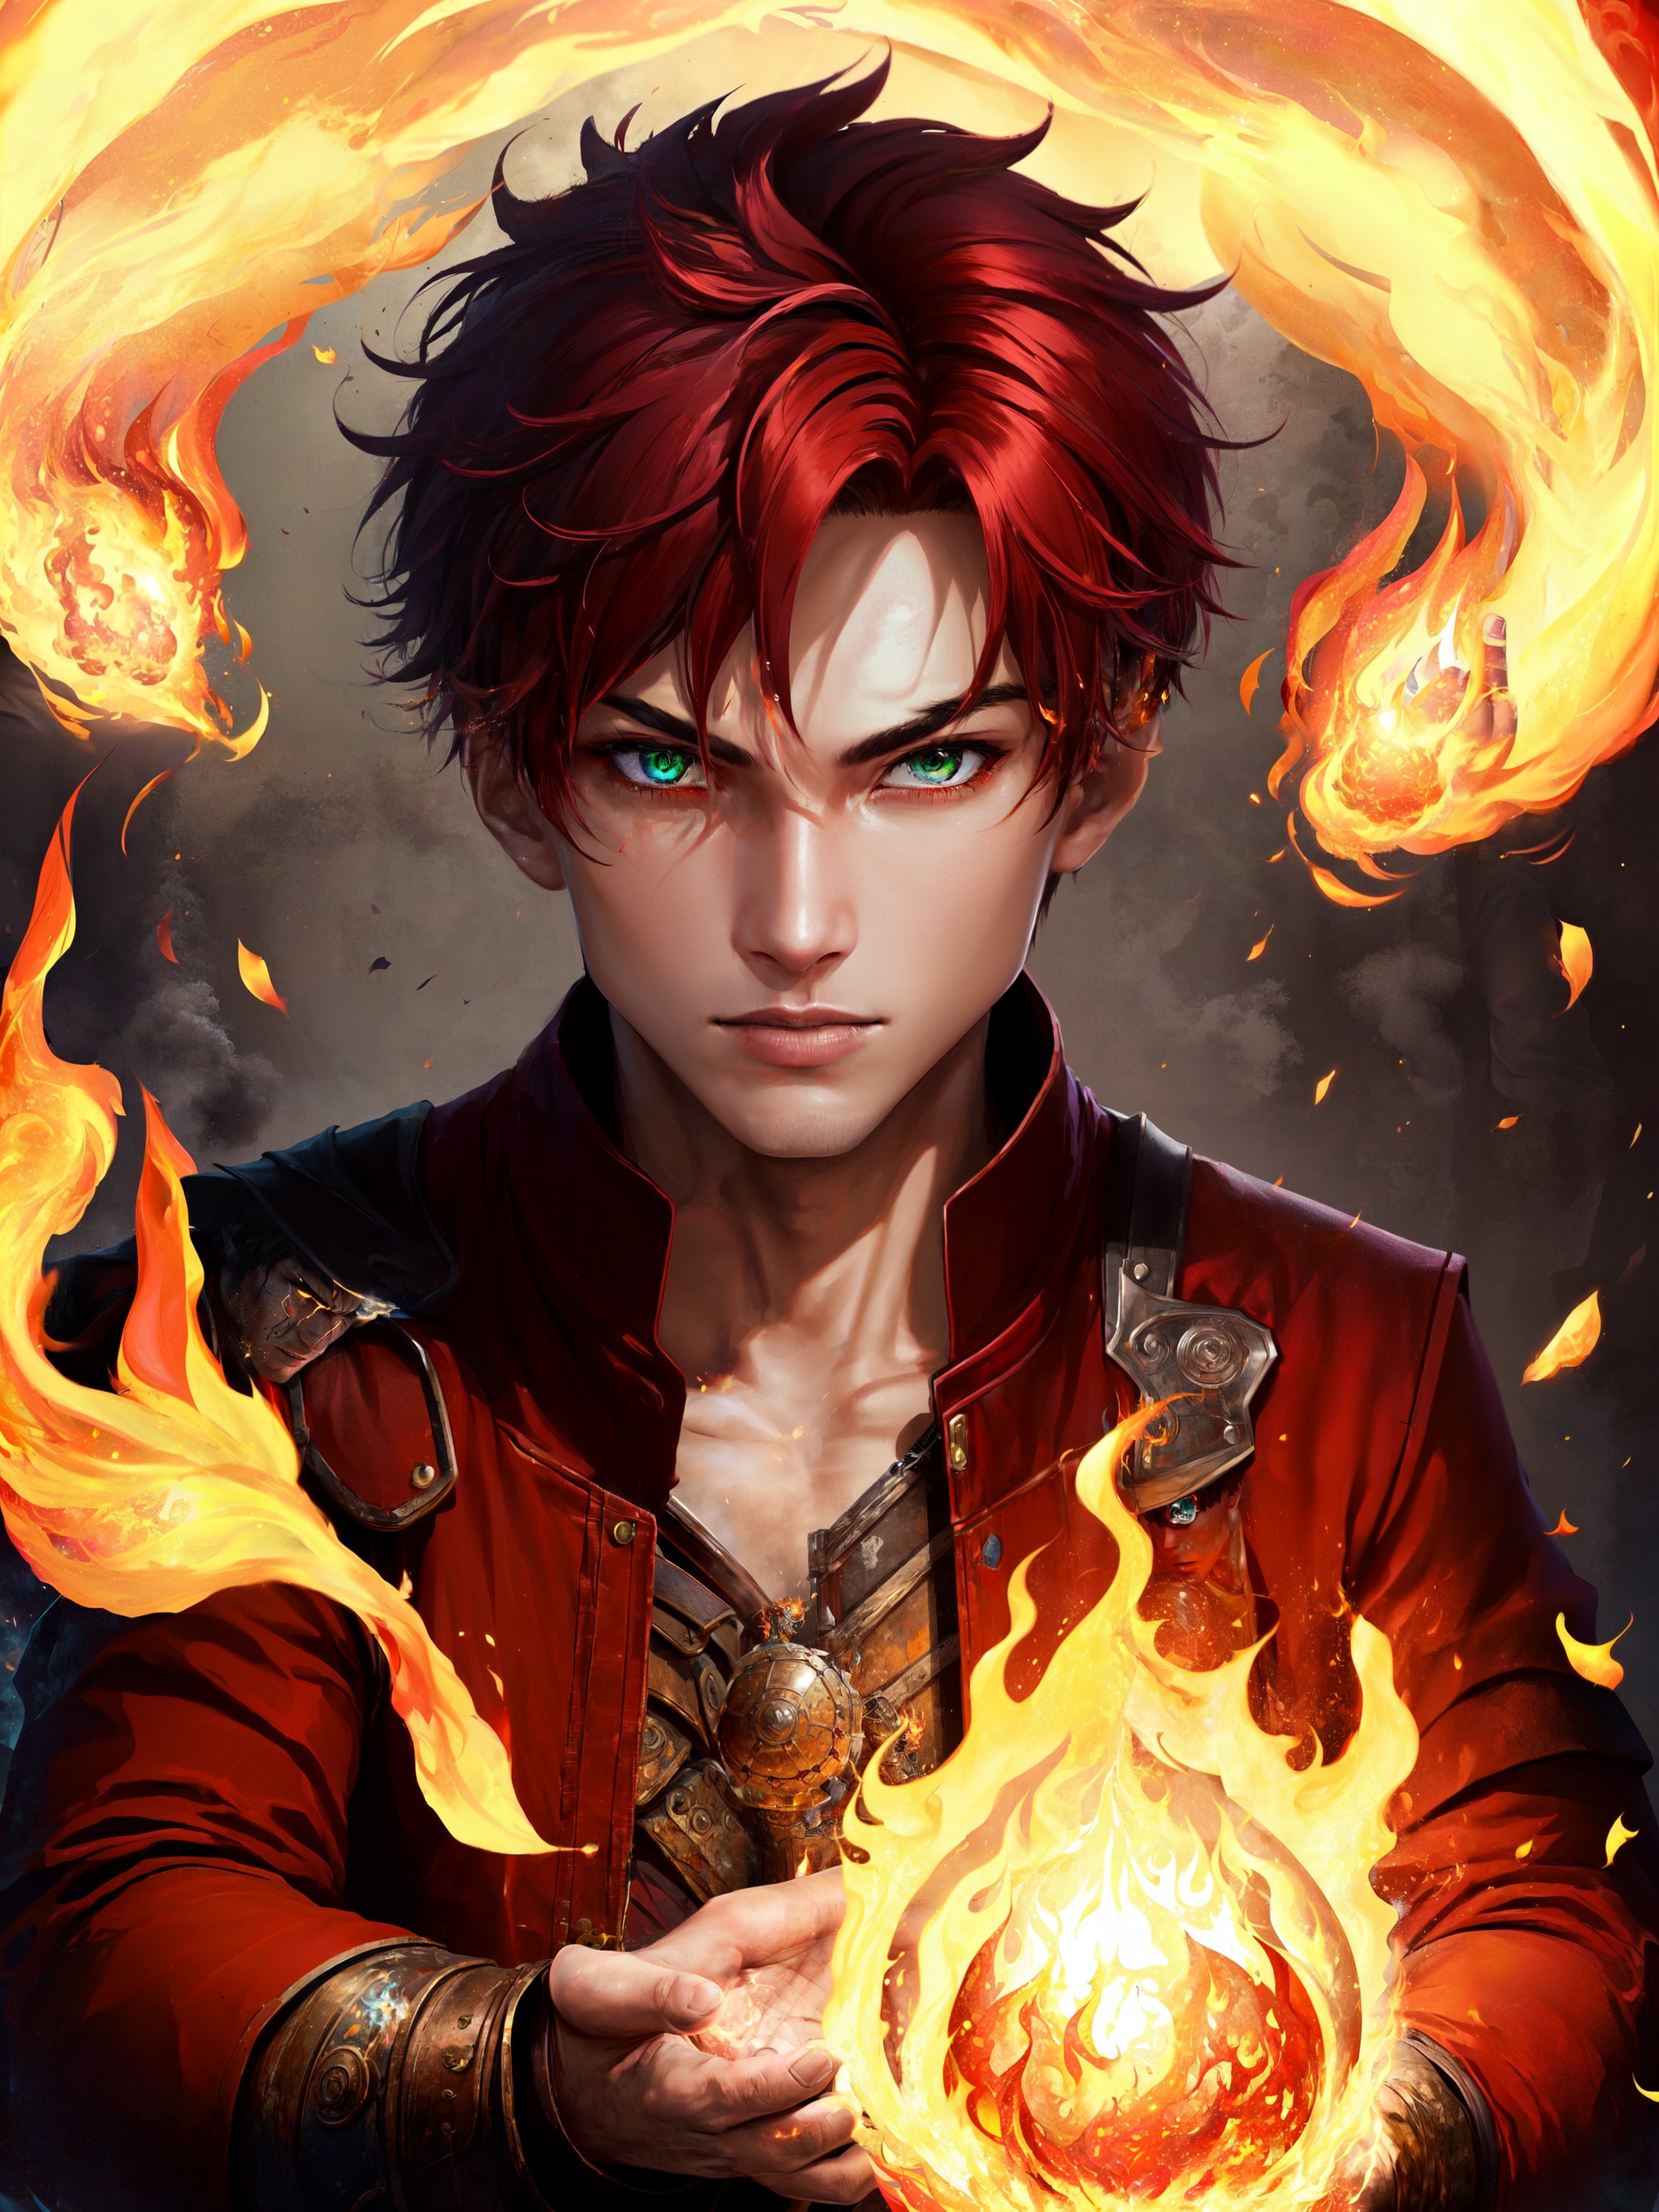 1boy, magic fire, pyrokinesis, holding fireball, <lora:Fire_VFX:0.8>, red hair, red dress, green eyes,